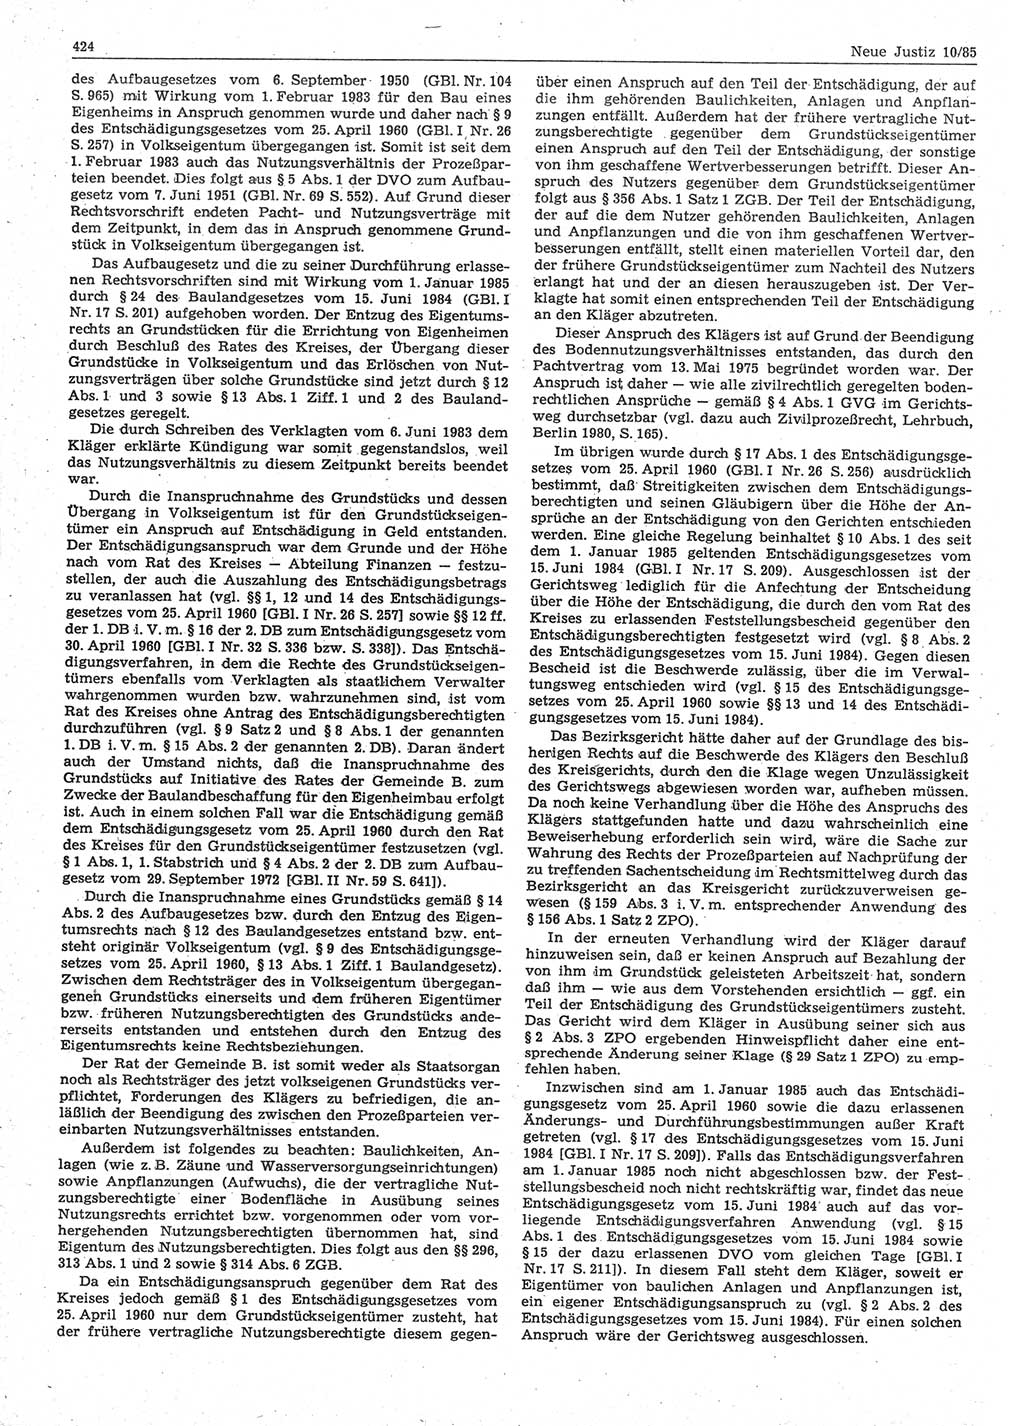 Neue Justiz (NJ), Zeitschrift für sozialistisches Recht und Gesetzlichkeit [Deutsche Demokratische Republik (DDR)], 39. Jahrgang 1985, Seite 424 (NJ DDR 1985, S. 424)